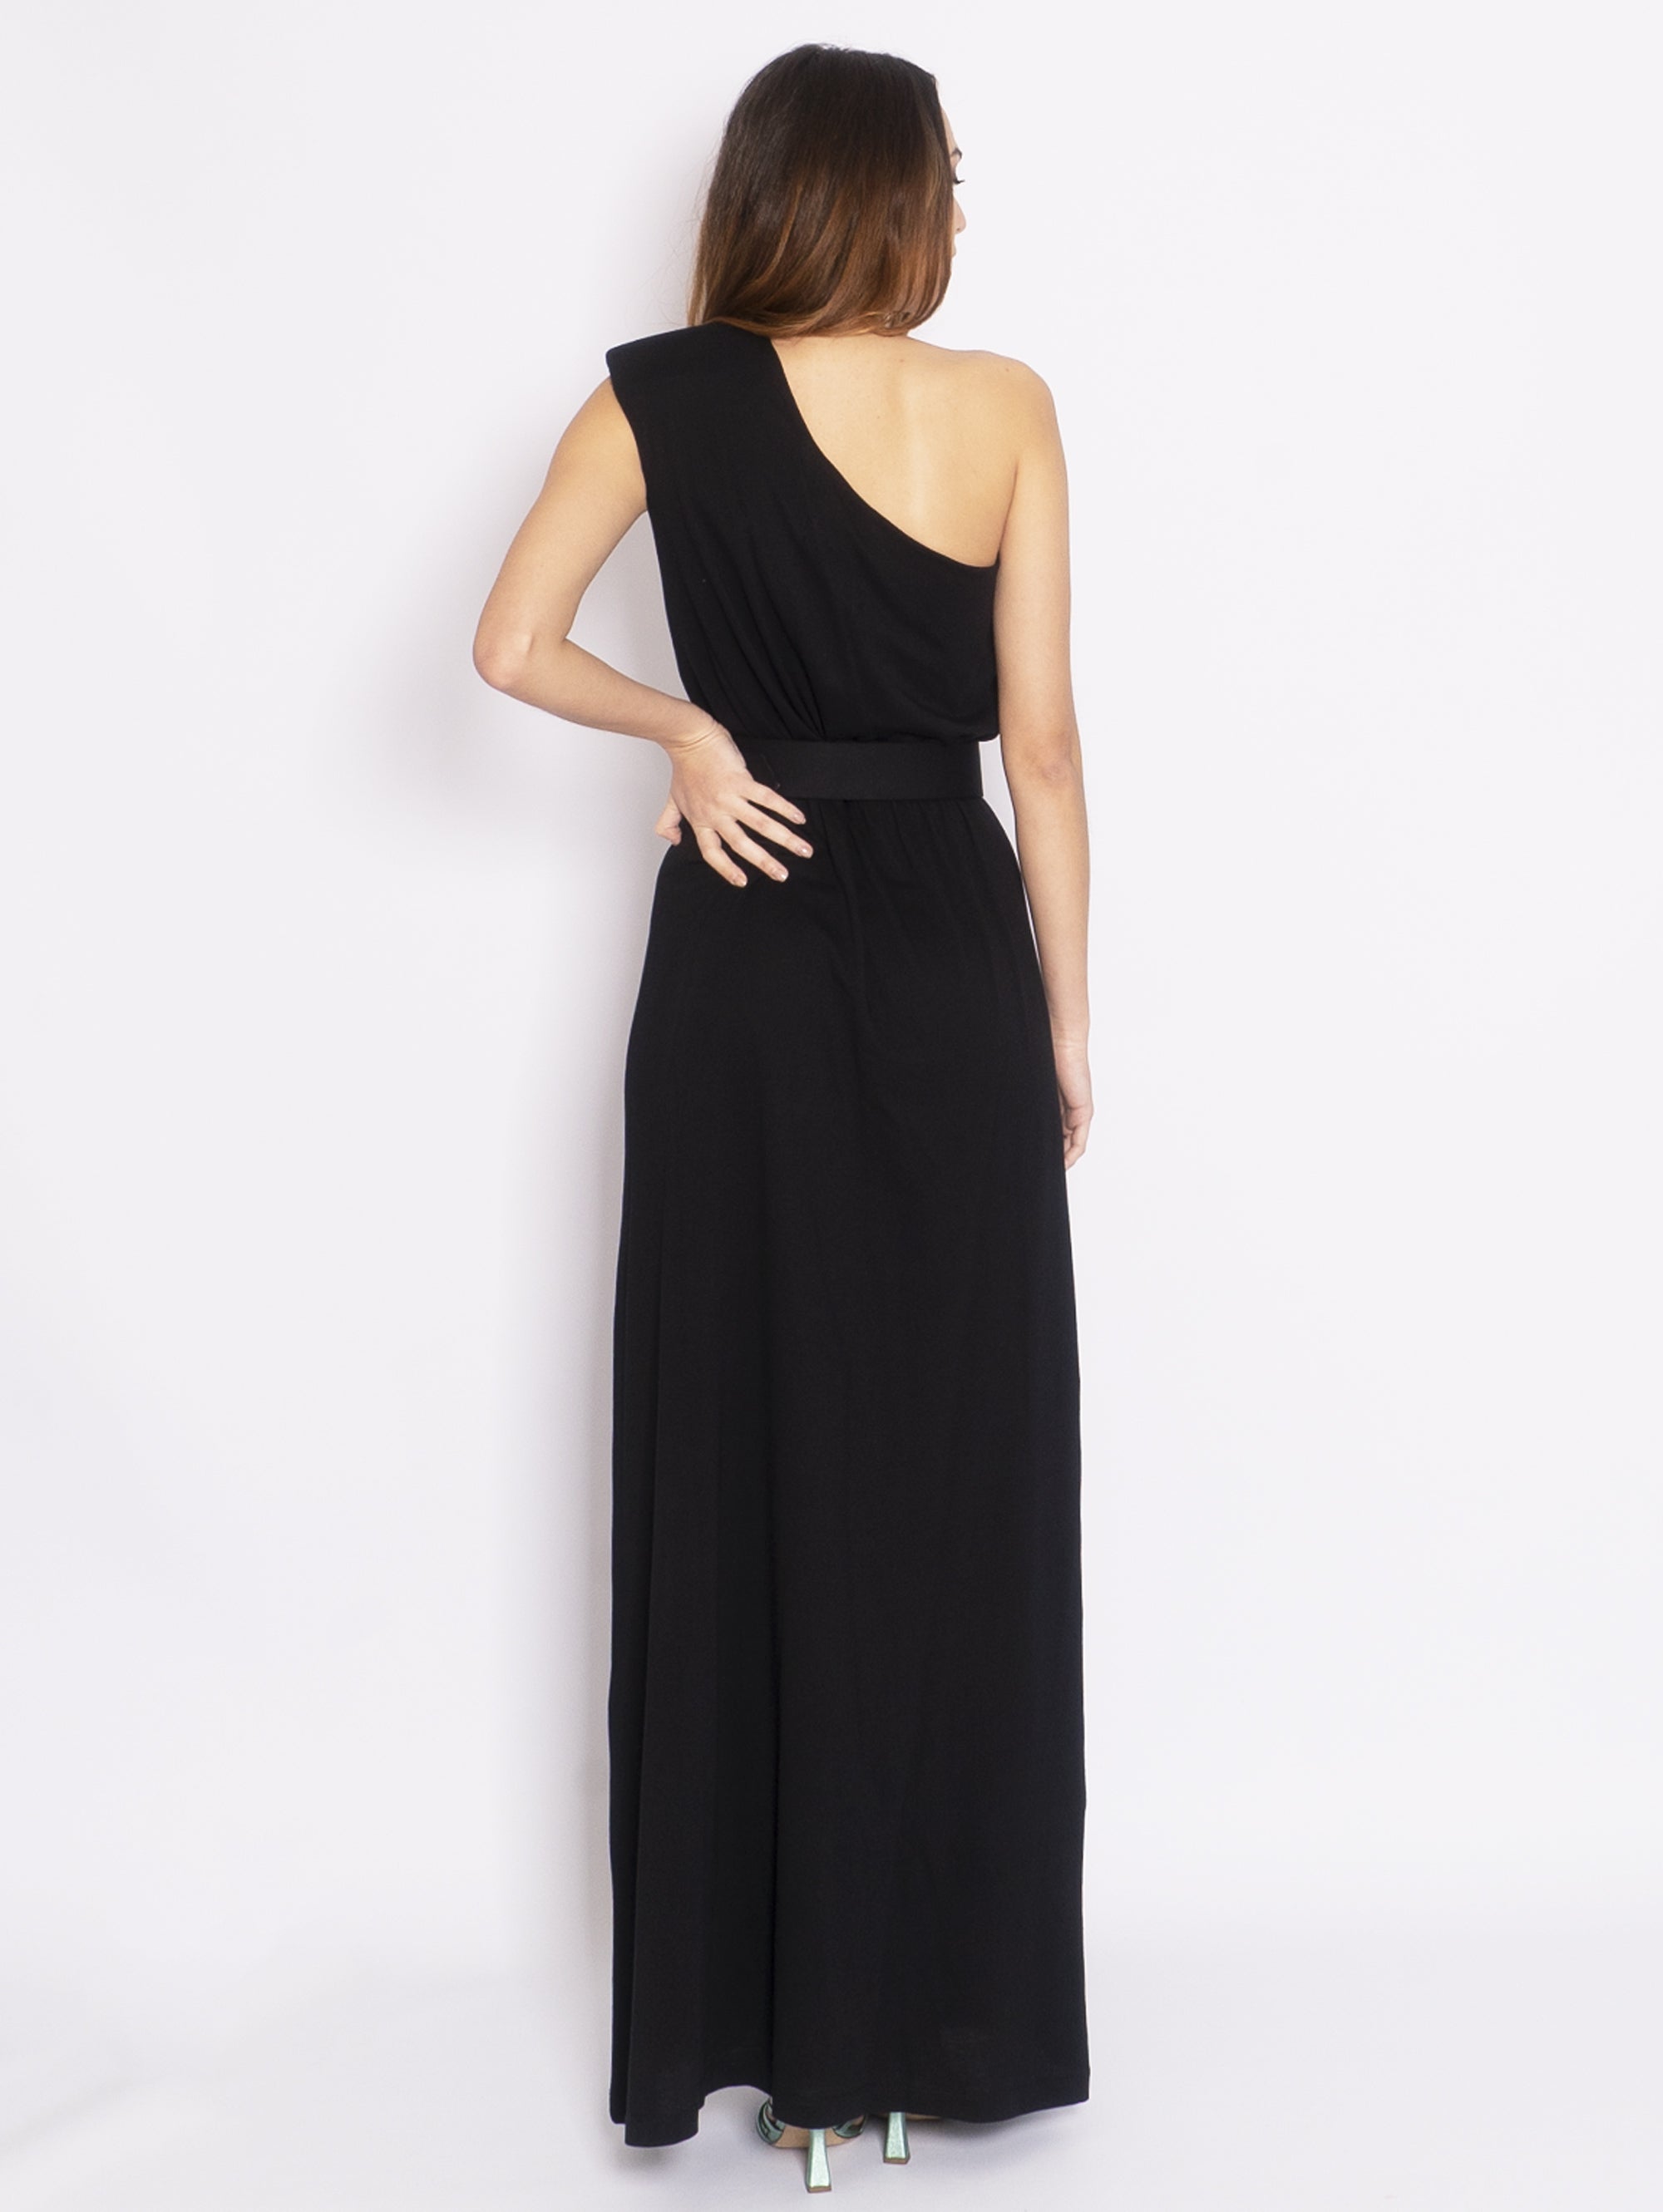 Mono-Schulter-Kleid aus schwarzem Jersey